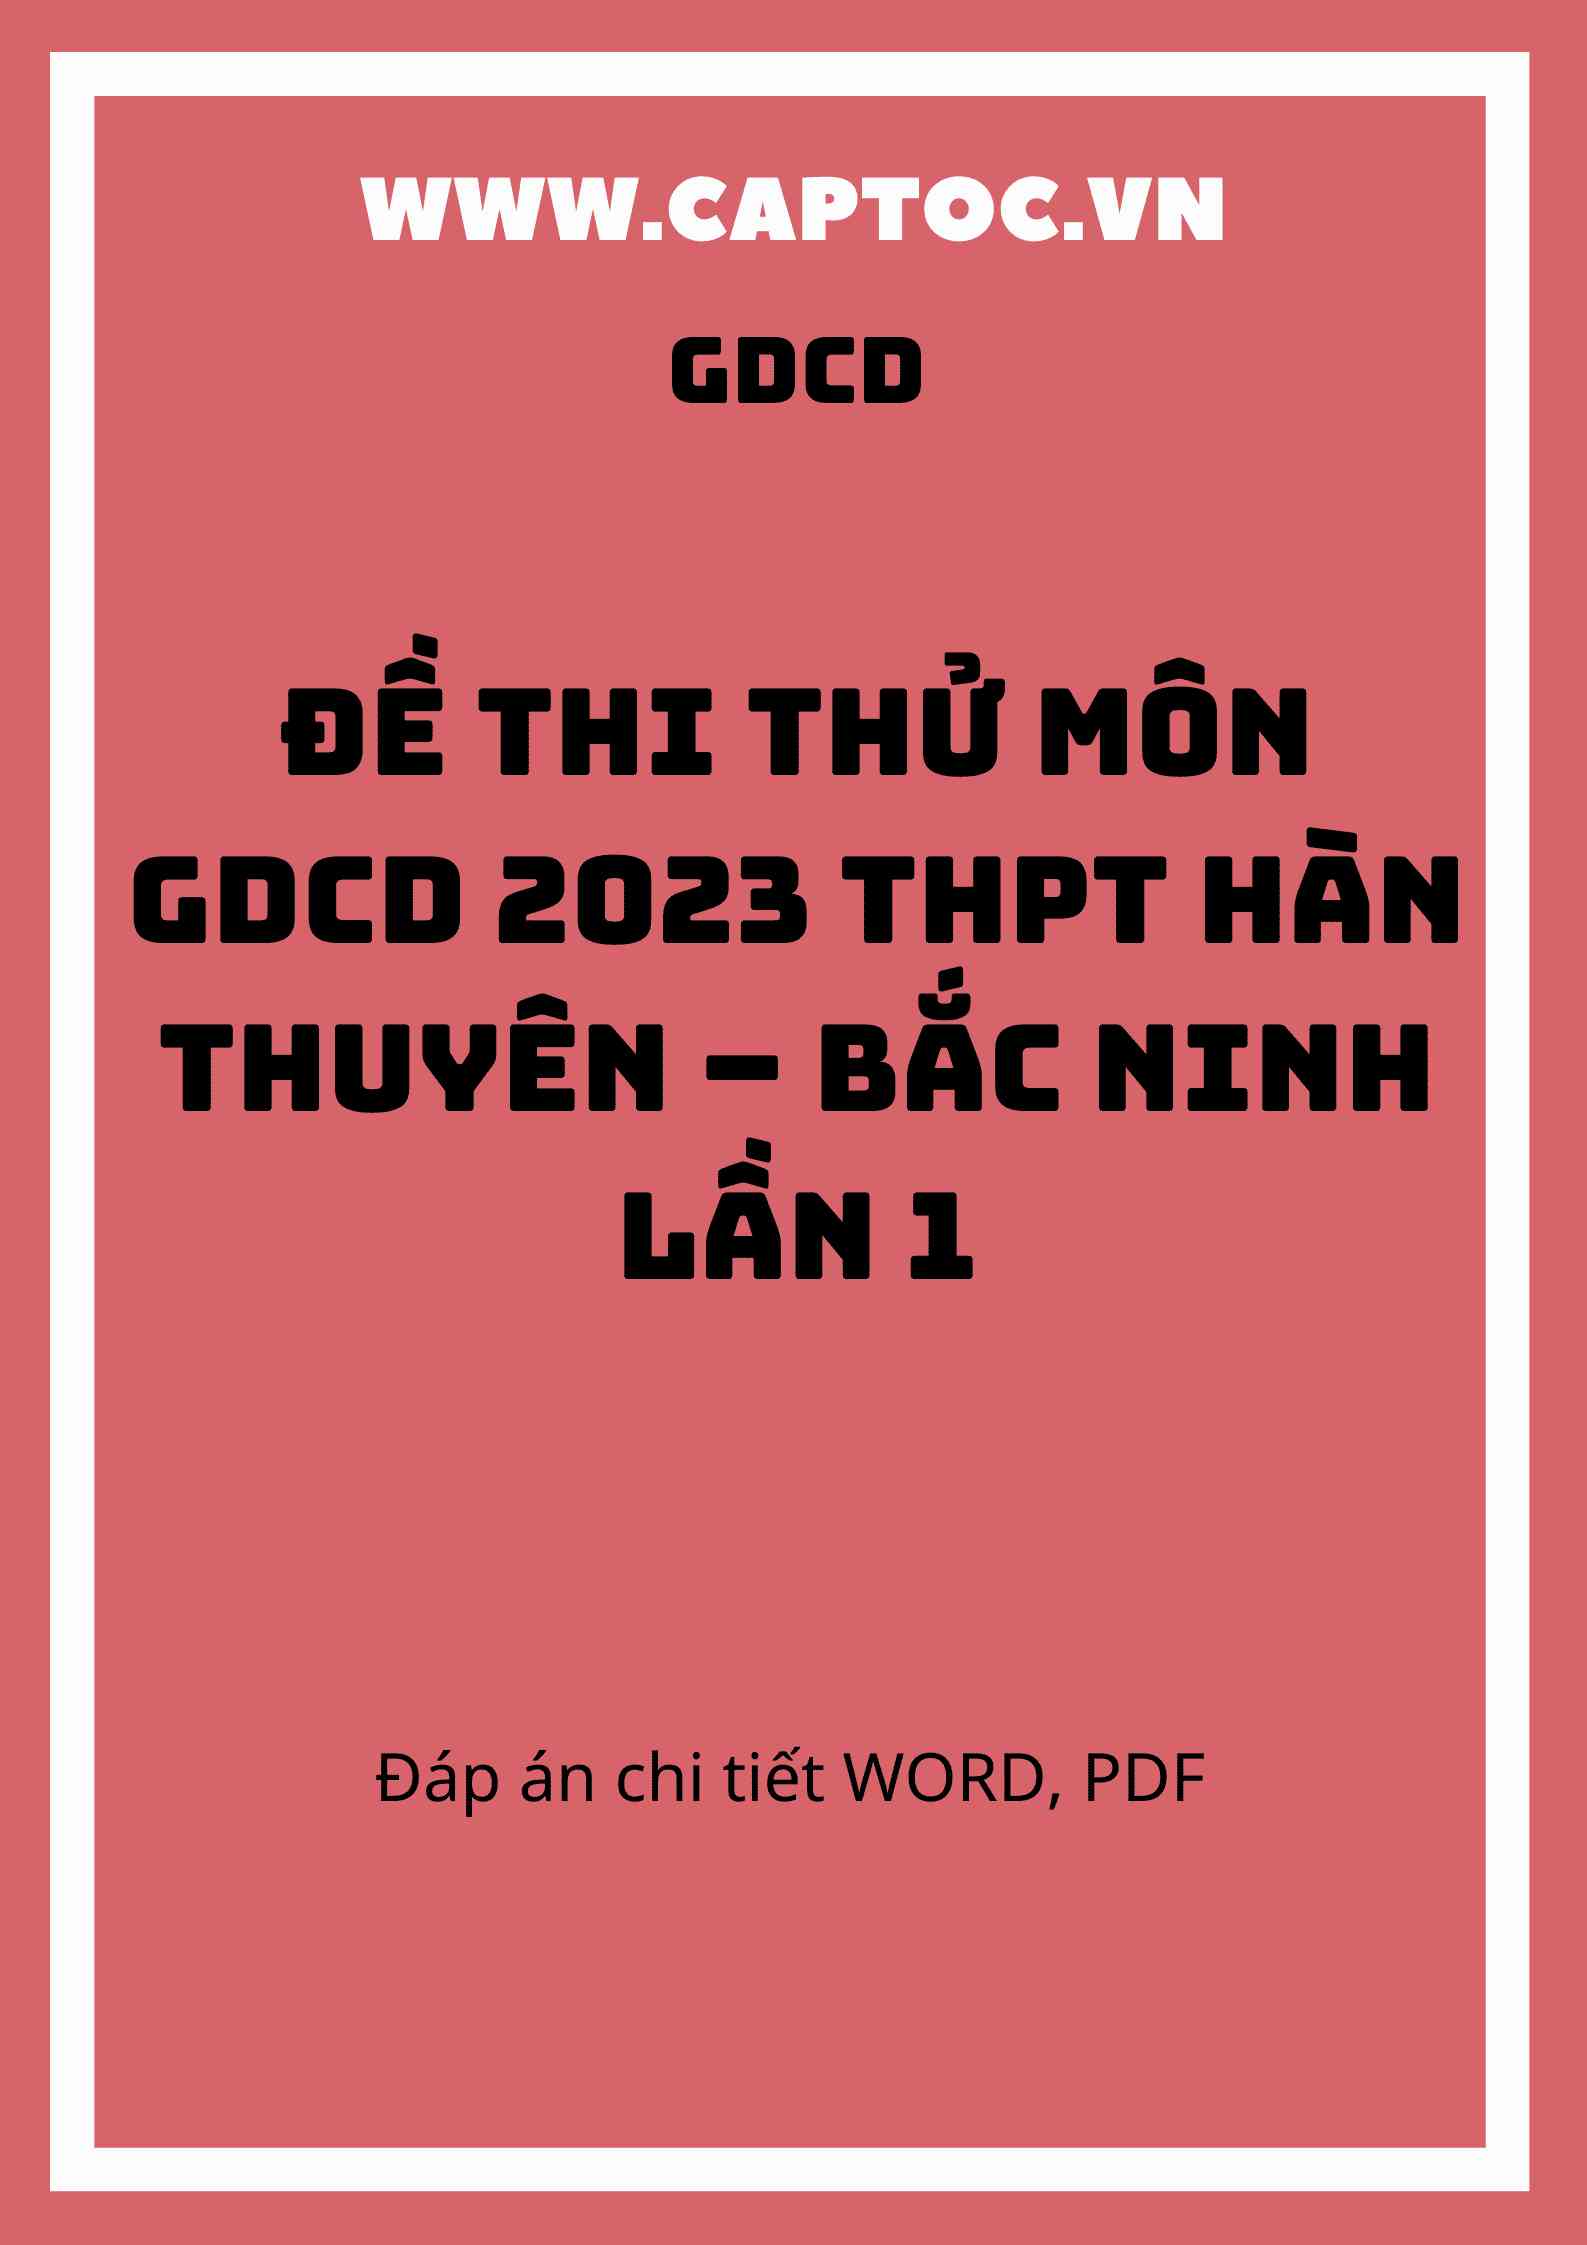 Đề thi thử GDCD 2023 trường THPT Hồng Lĩnh lần 1